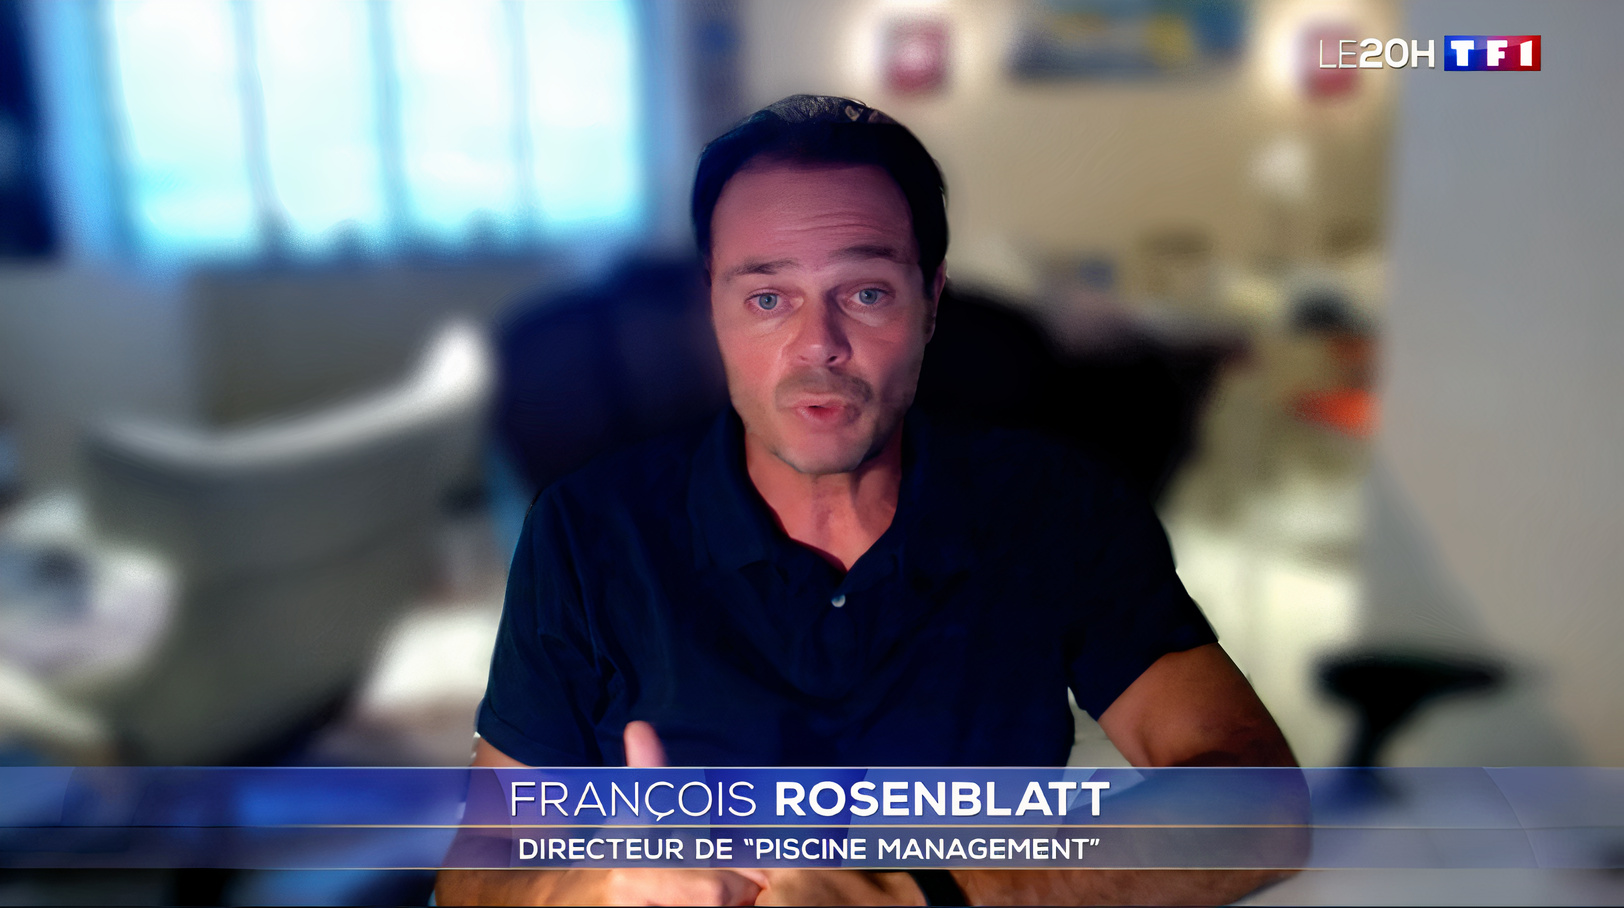 François Rosenblatt de Piscine Management sur TF1